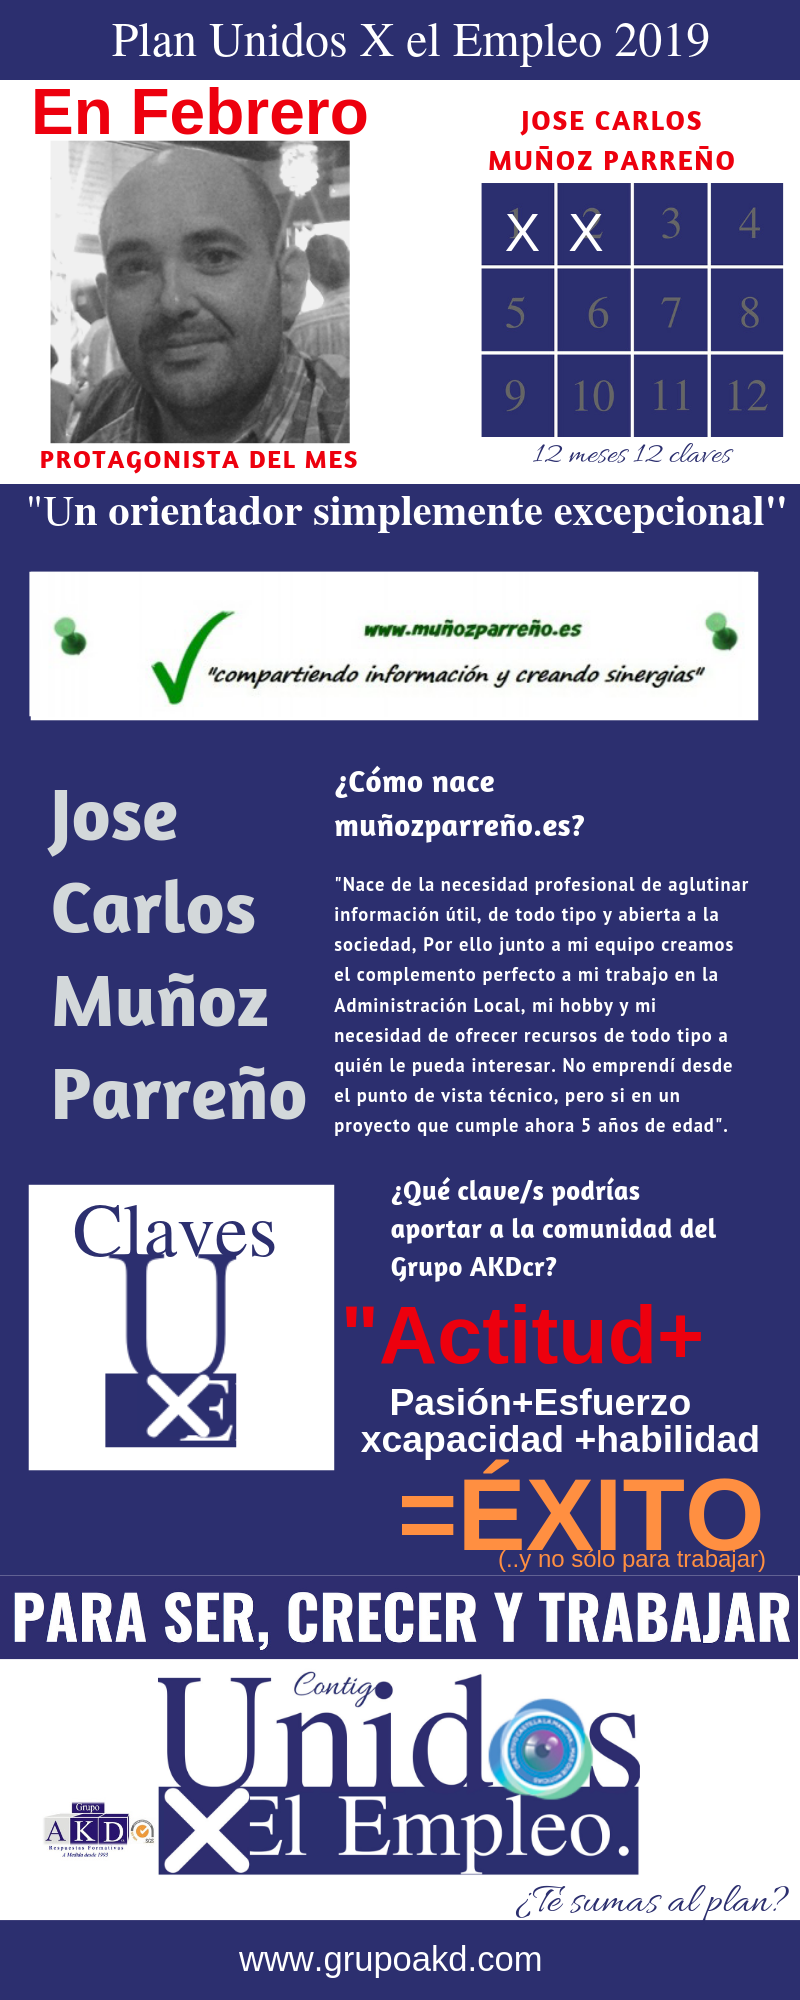 Protagonista febrero: Jose Carlos Muñoz Parreño